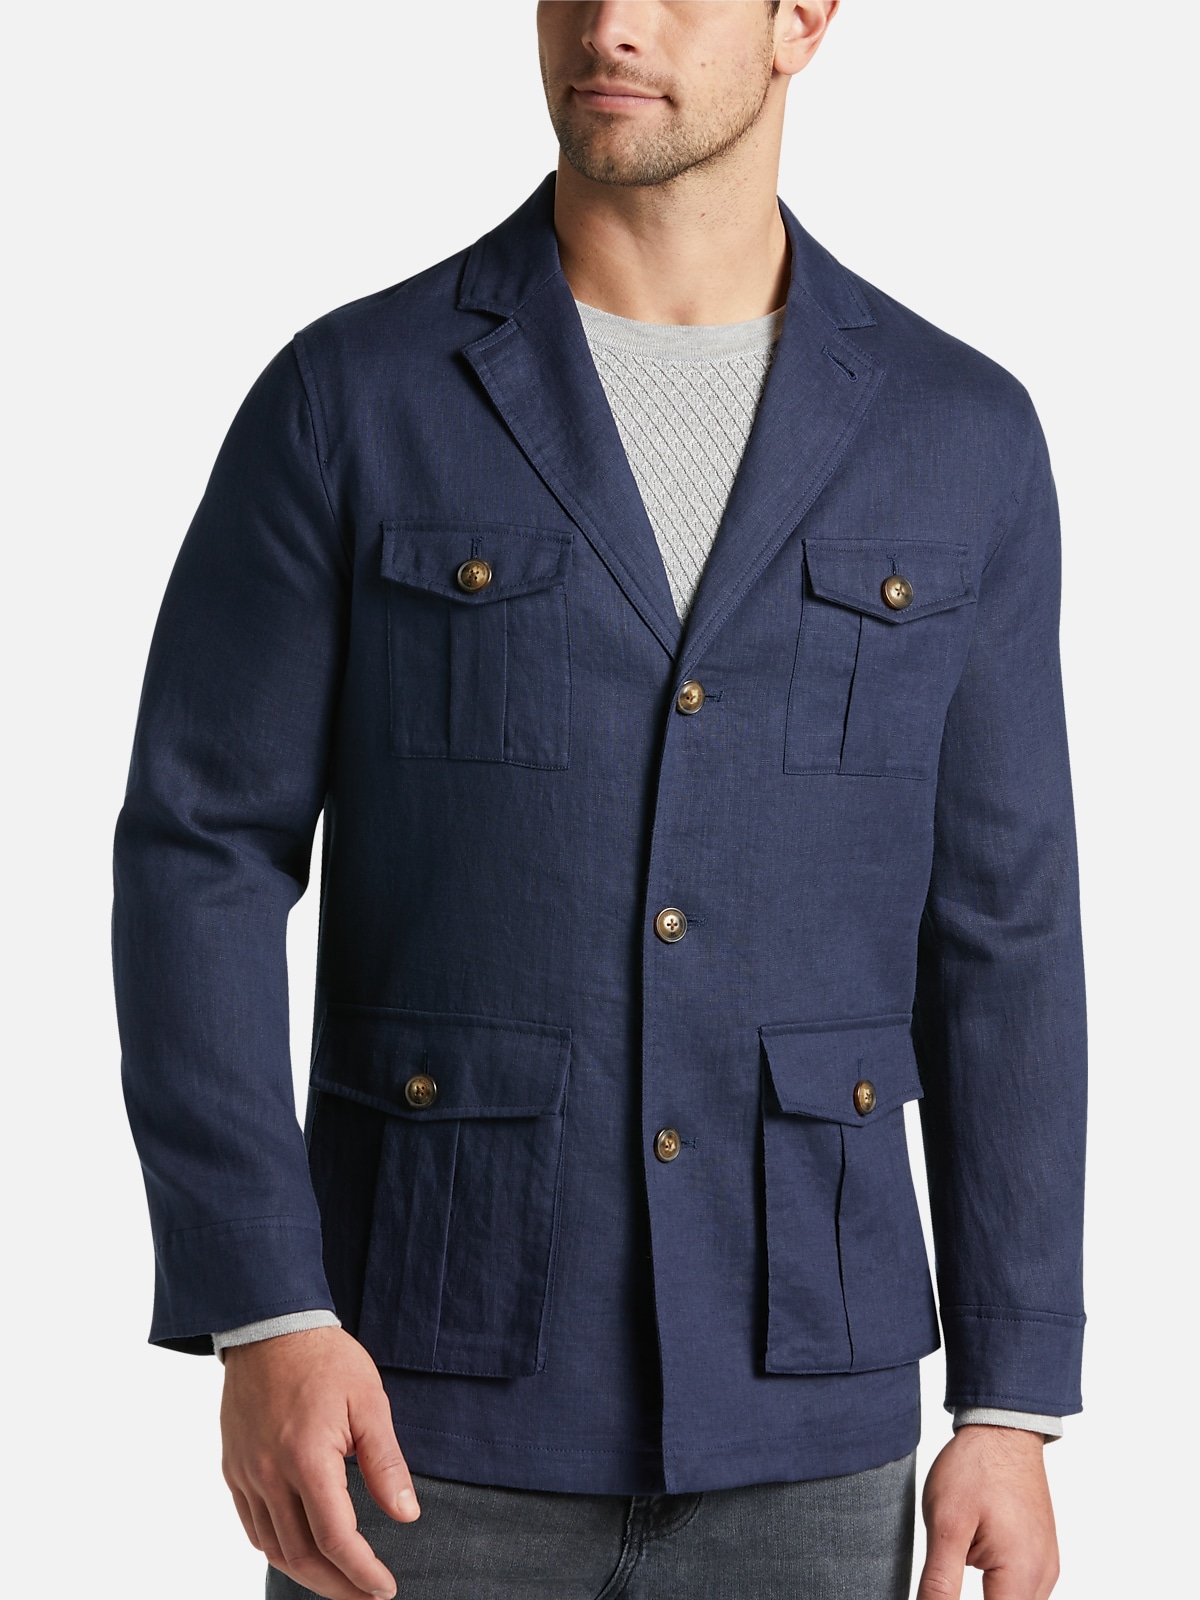 Joseph Abboud Modern Fit Linen Jacket | All Sale| Men's Wearhouse